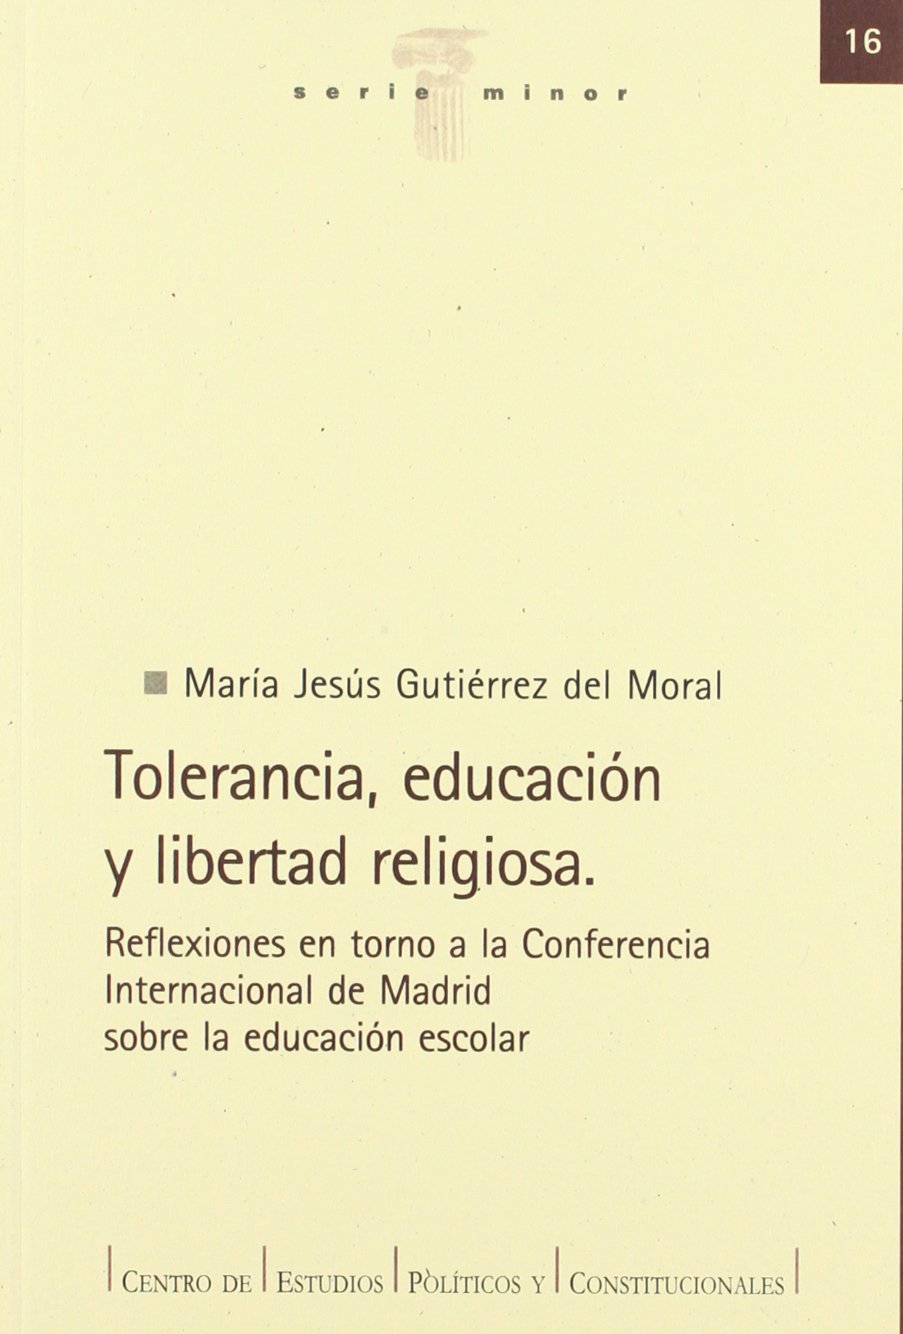 Imagen de portada del libro Tolerancia, educación y libertad religiosa